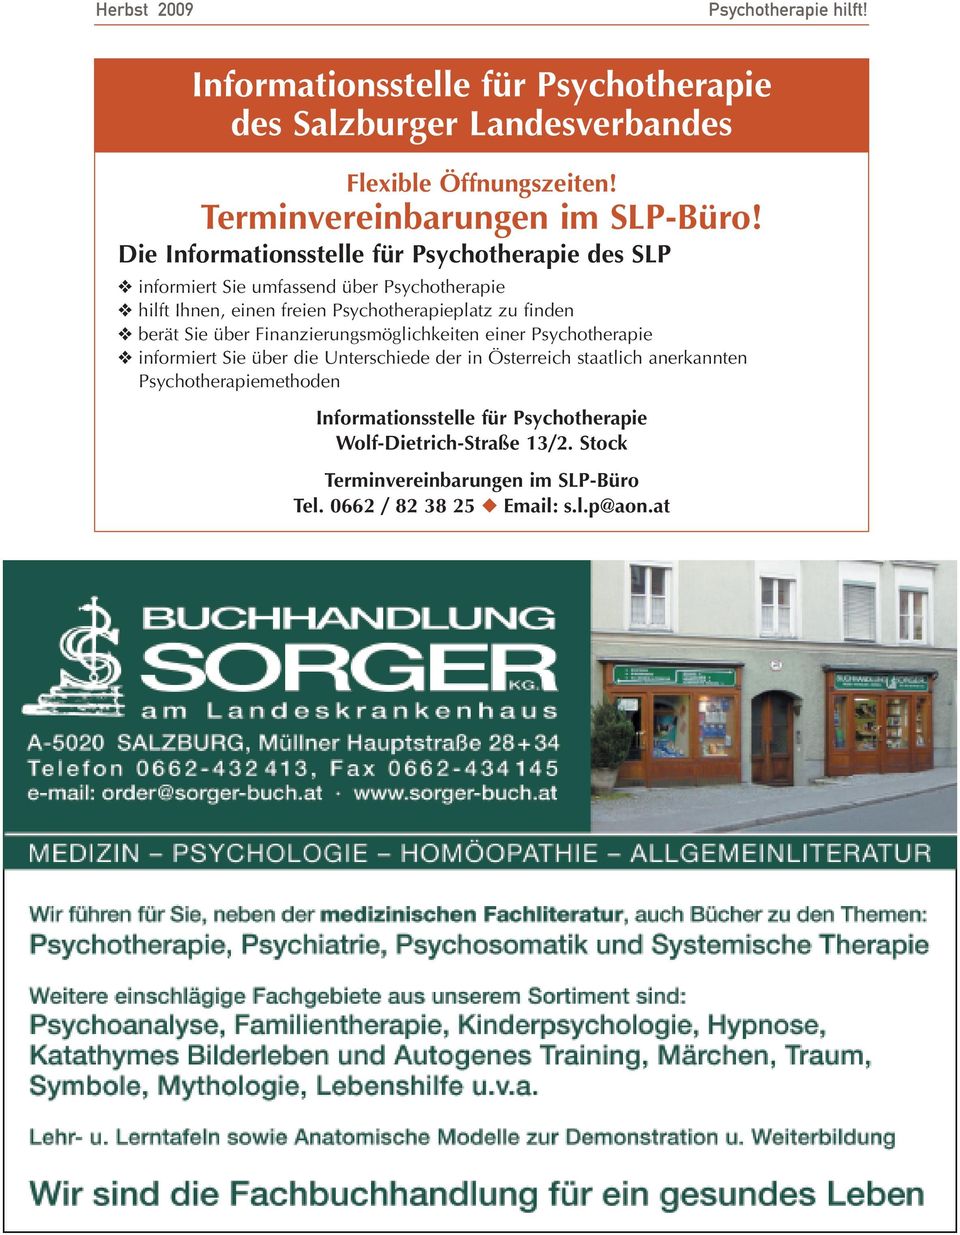 finden berät Sie über Finanzierungsmöglichkeiten einer Psychotherapie informiert Sie über die Unterschiede der in Österreich staatlich anerkannten